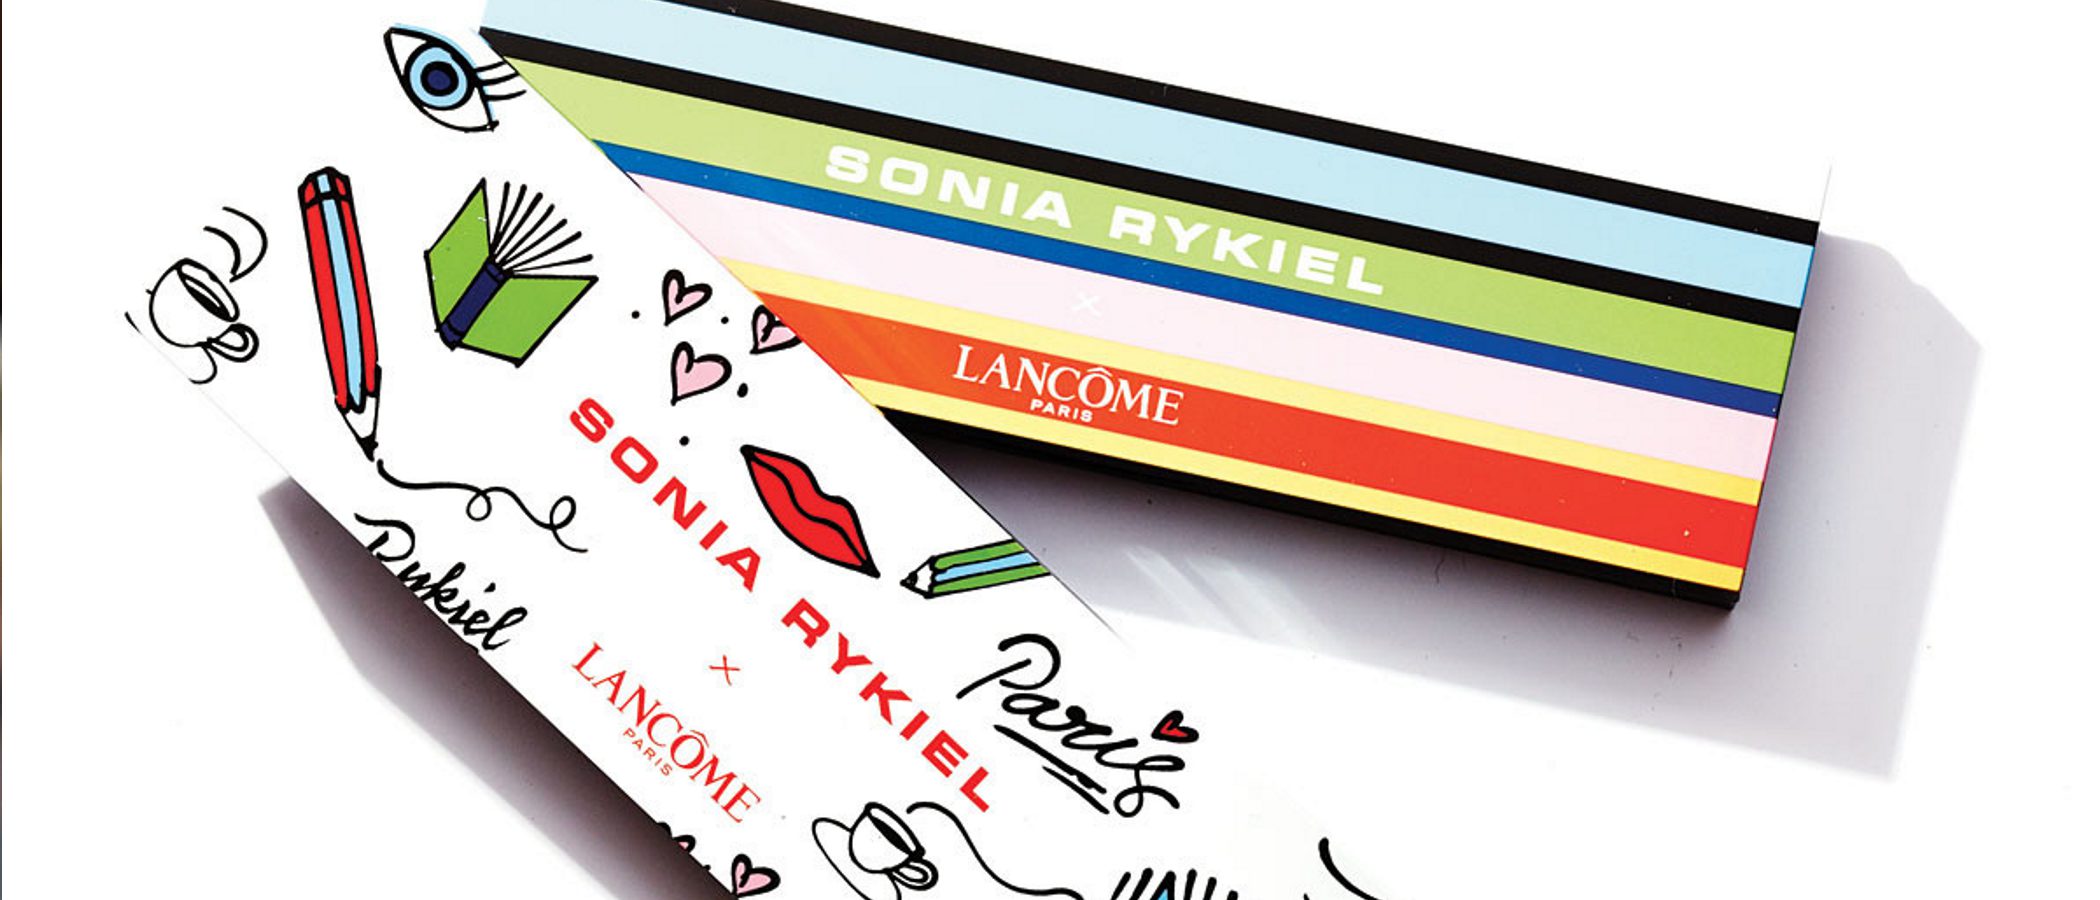 Sonia Rykiel se apodera de Lâncome con una nueva colección colorida